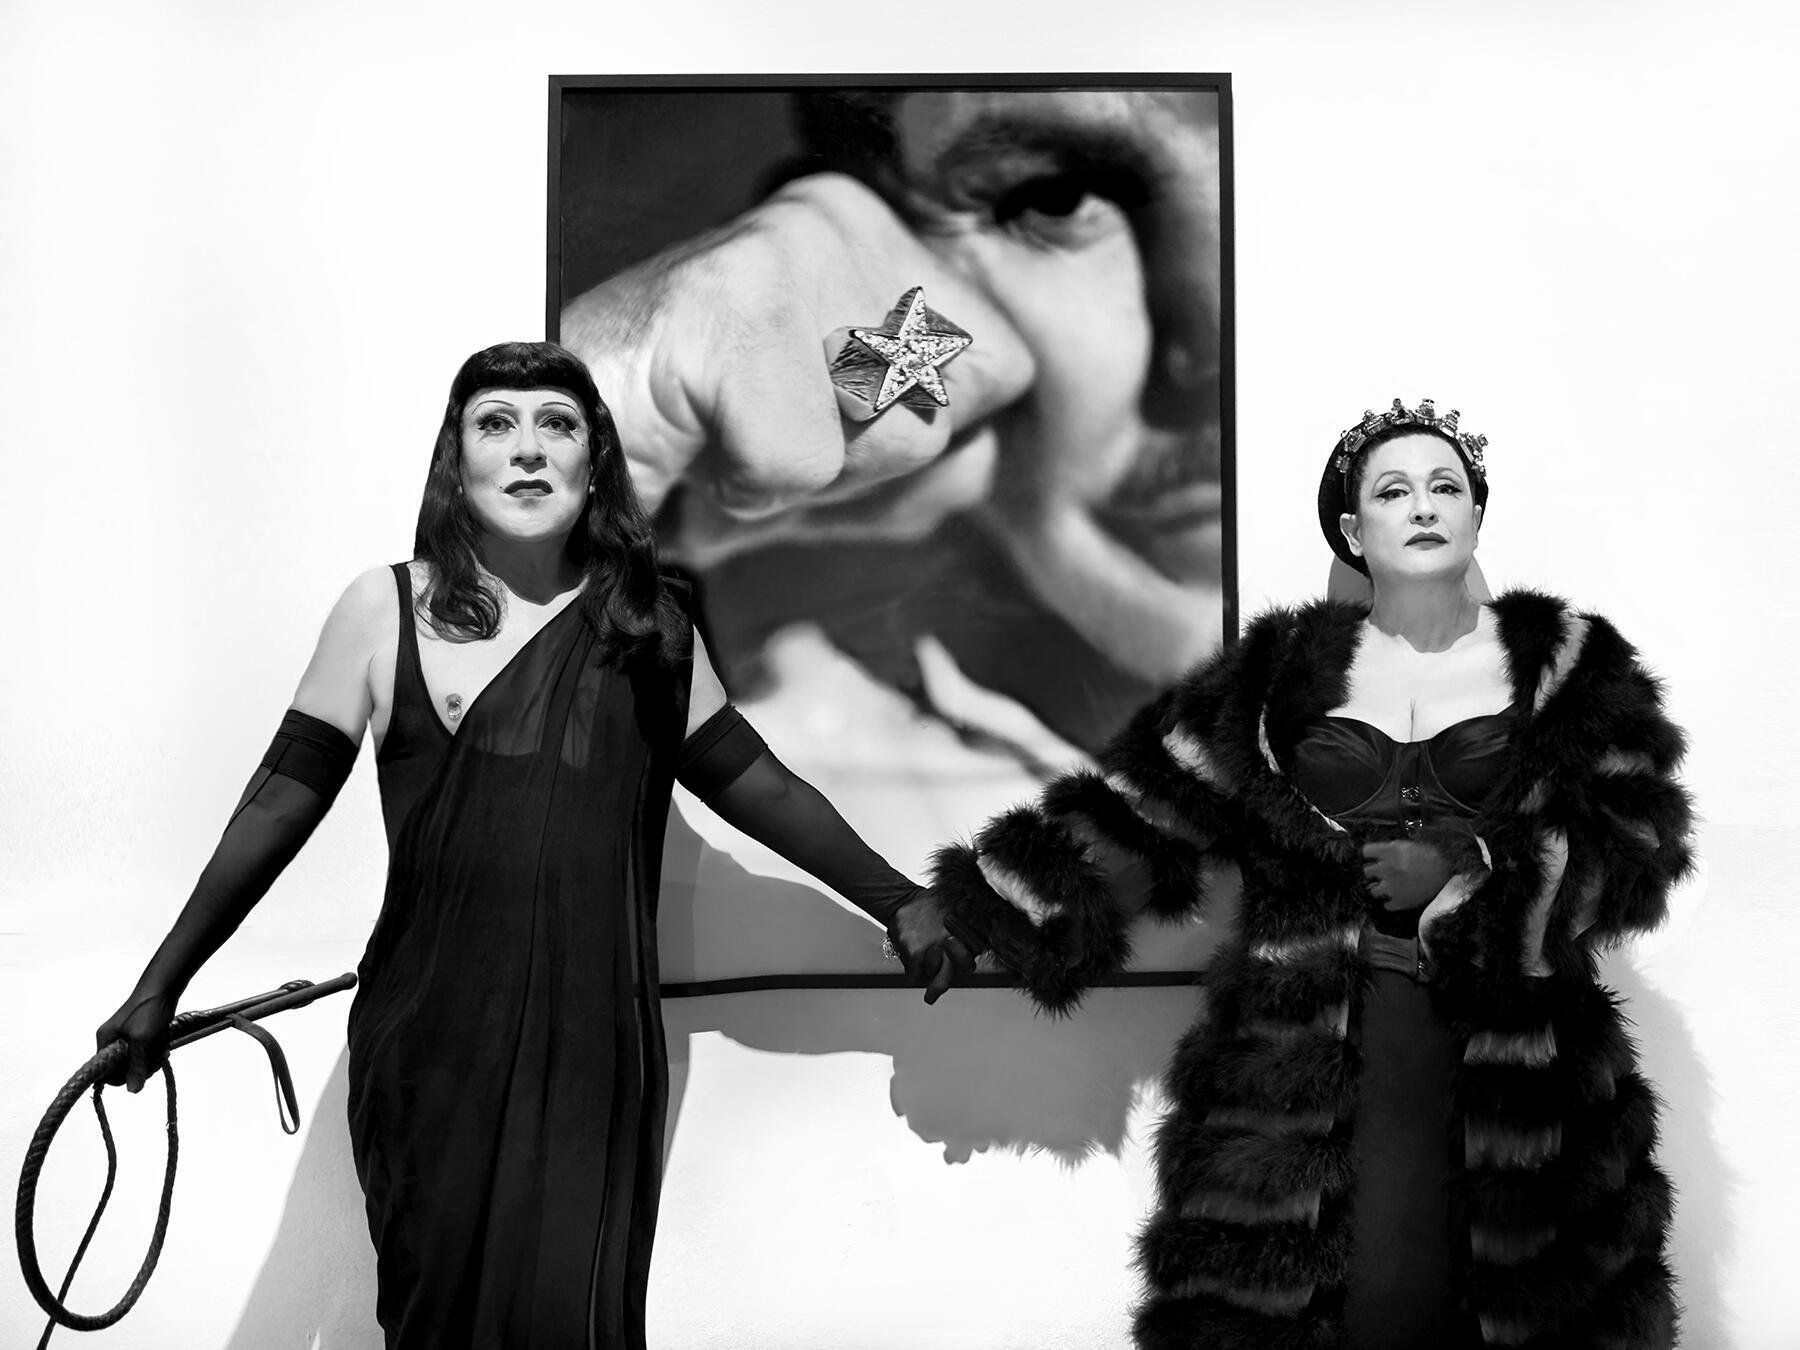 סטלה אליס עמר וג'ואי אריאס בתערוכה של מוגלר במוזיאון ברוקלין